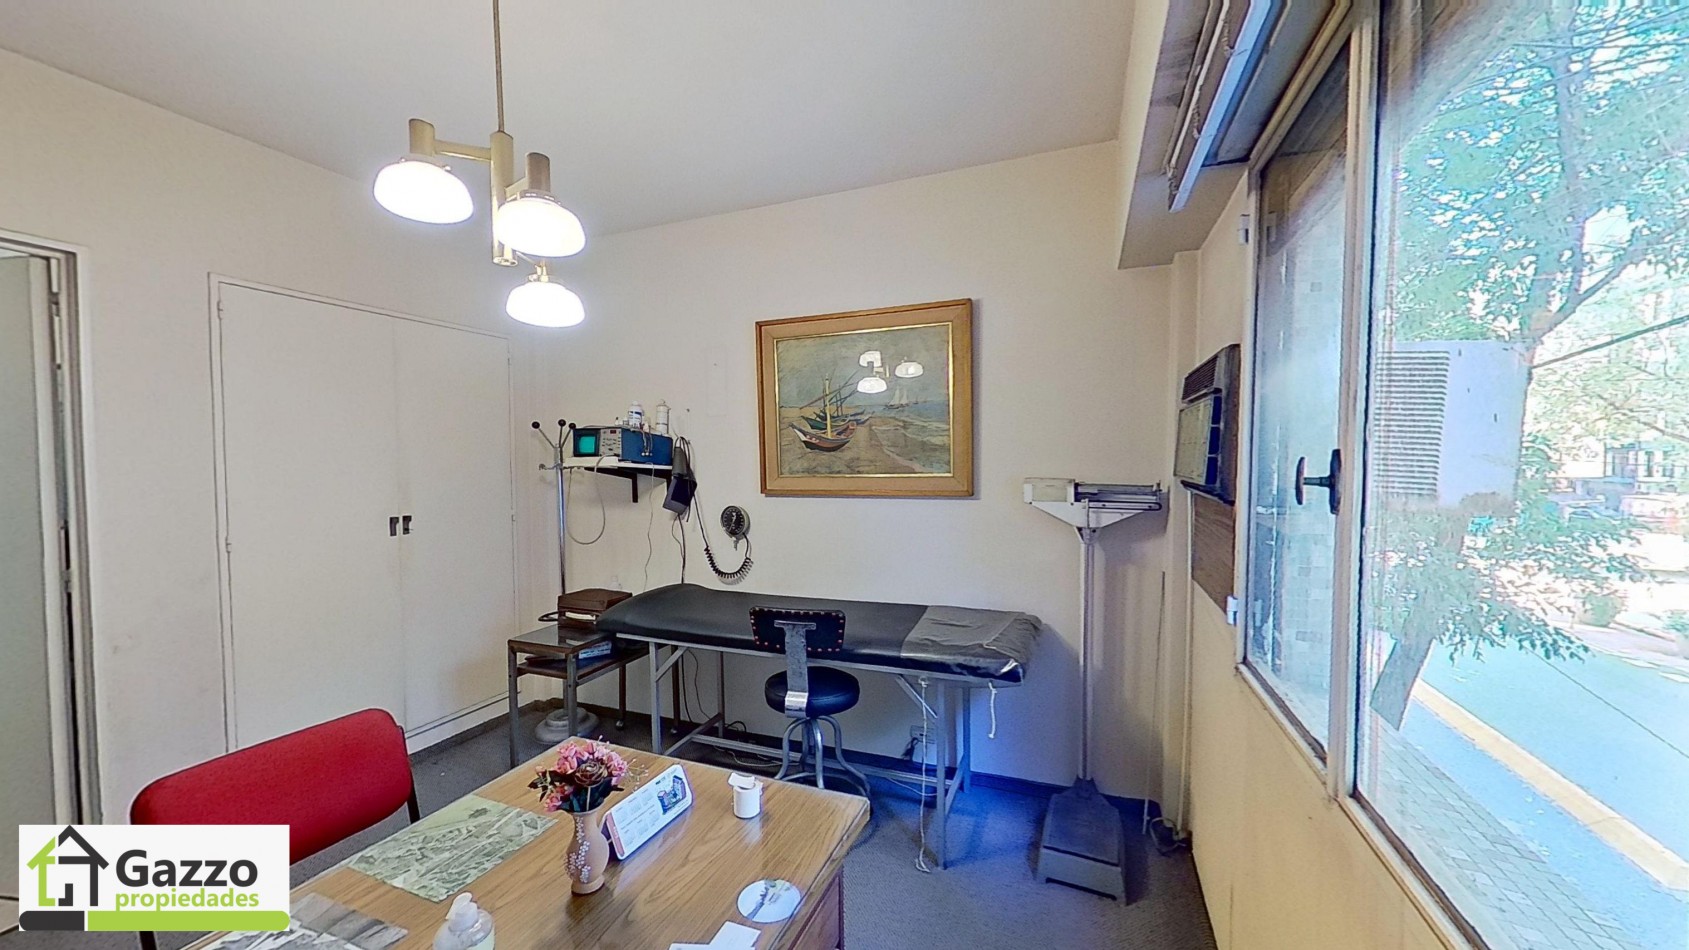 Departamento de 2 ambientes + bano en suite + cocina separada